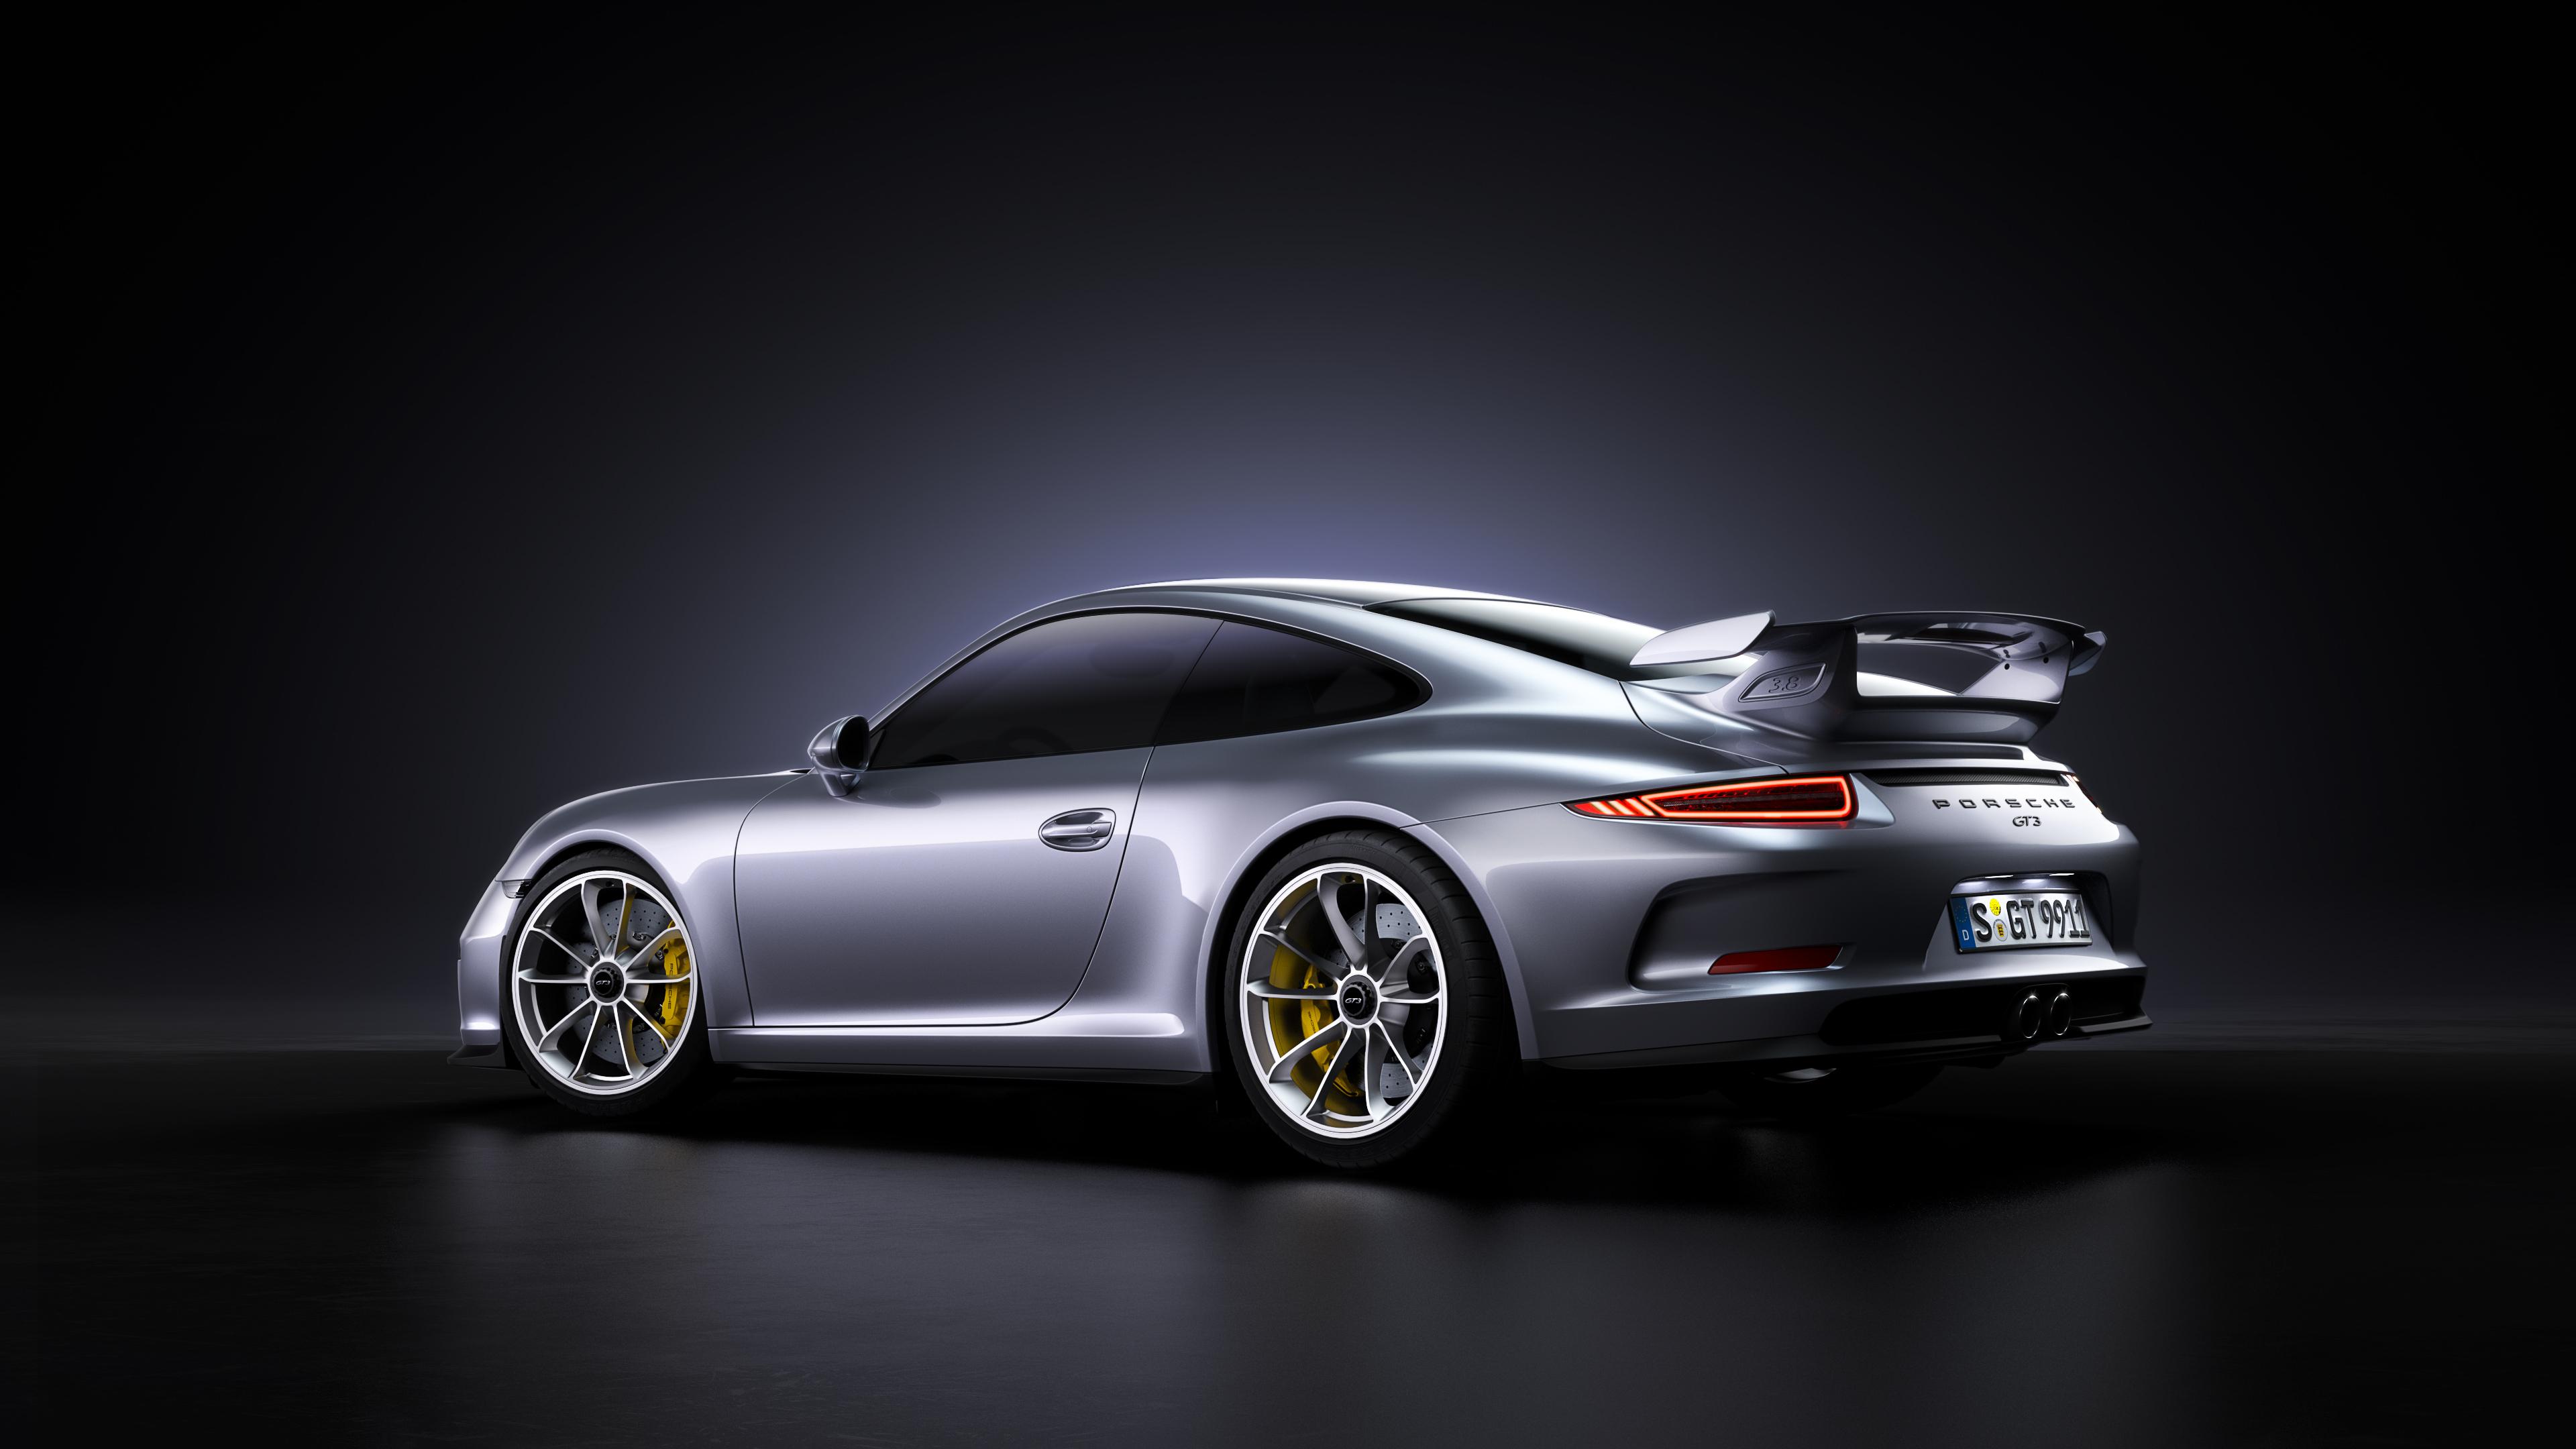 3840 x 2160 · jpeg - Porsche 911 GT3 4k Rear, HD Cars, 4k Wallpapers, Images, Backgrounds ...